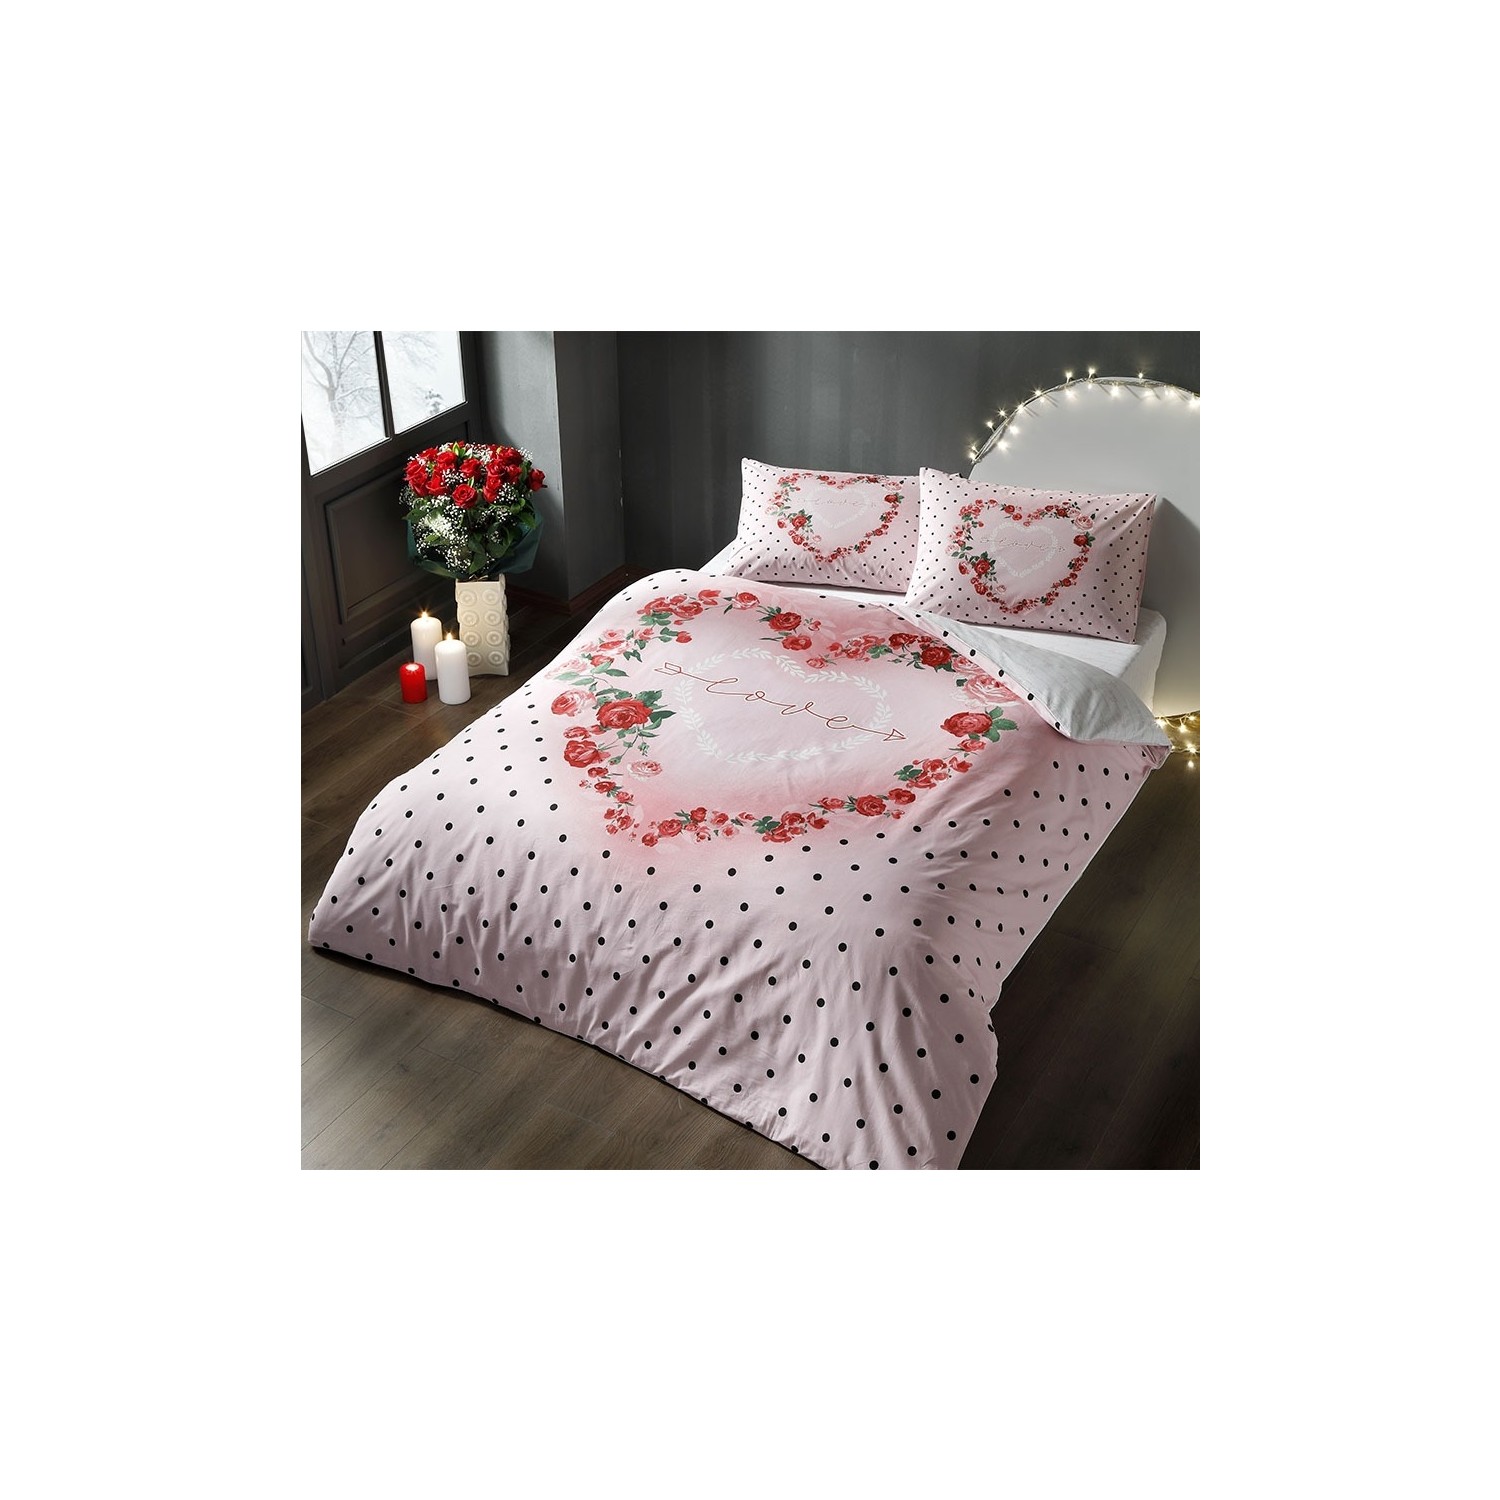 цена Tac День святого Валентина Glow Shining Комплект постельного белья Lover Розовый